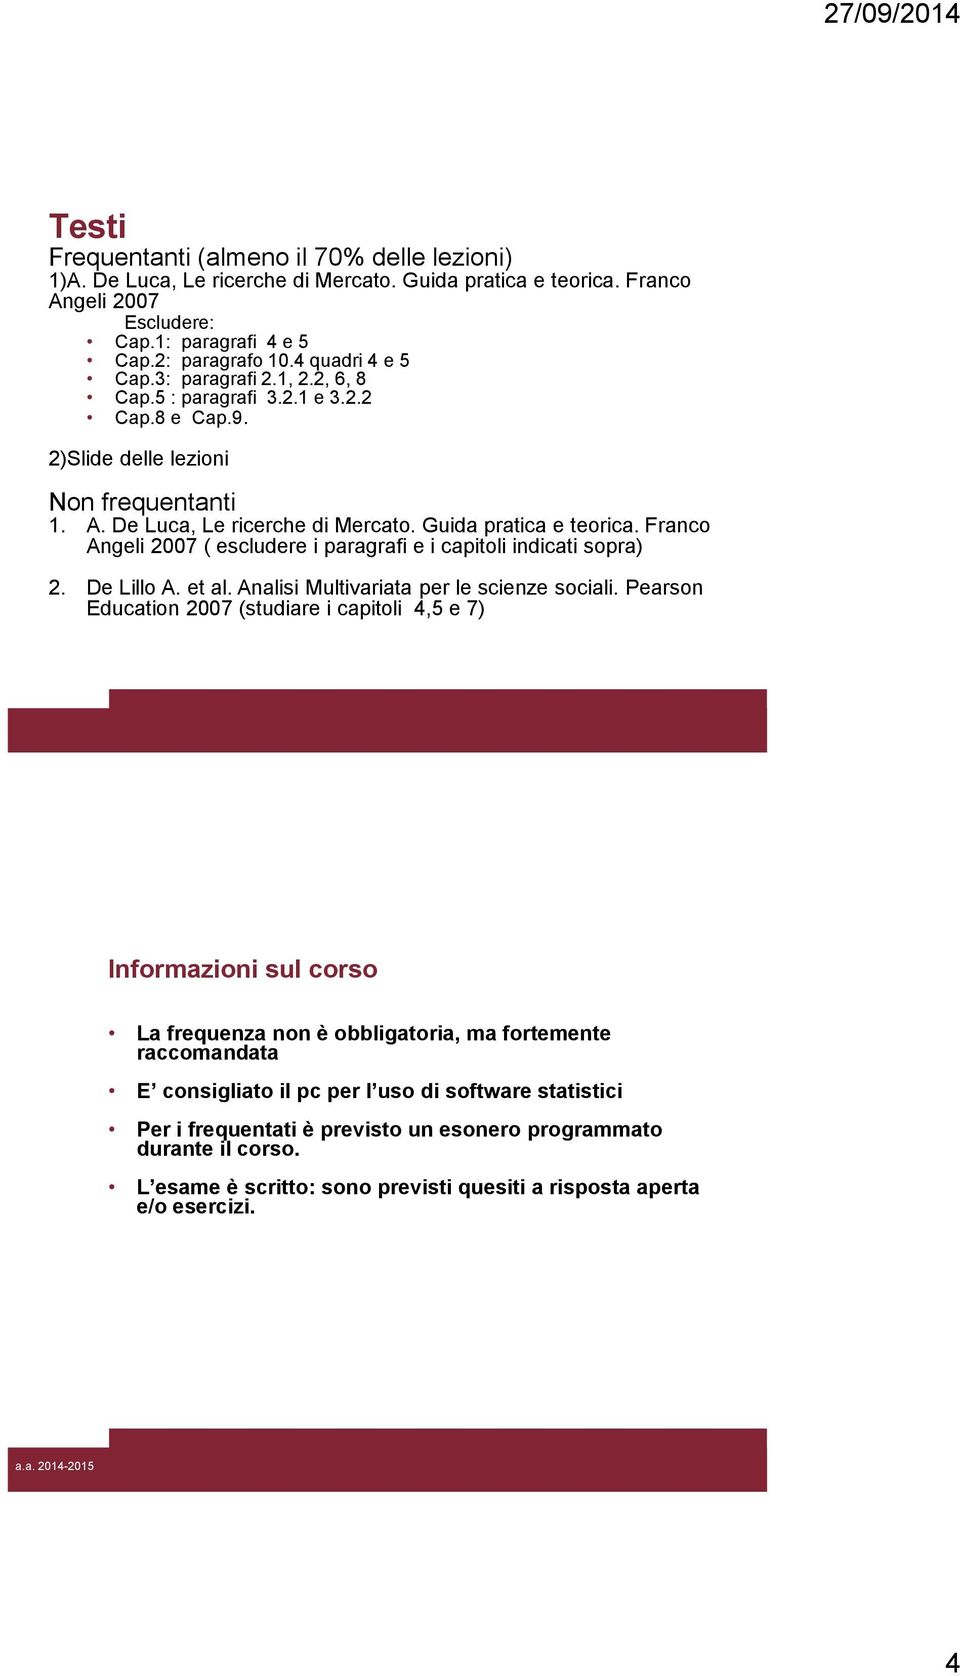 Franco Angeli 2007 ( escludere i paragrafi e i capitoli indicati sopra) 2. De Lillo A. et al. Analisi Multivariata per le scienze sociali.